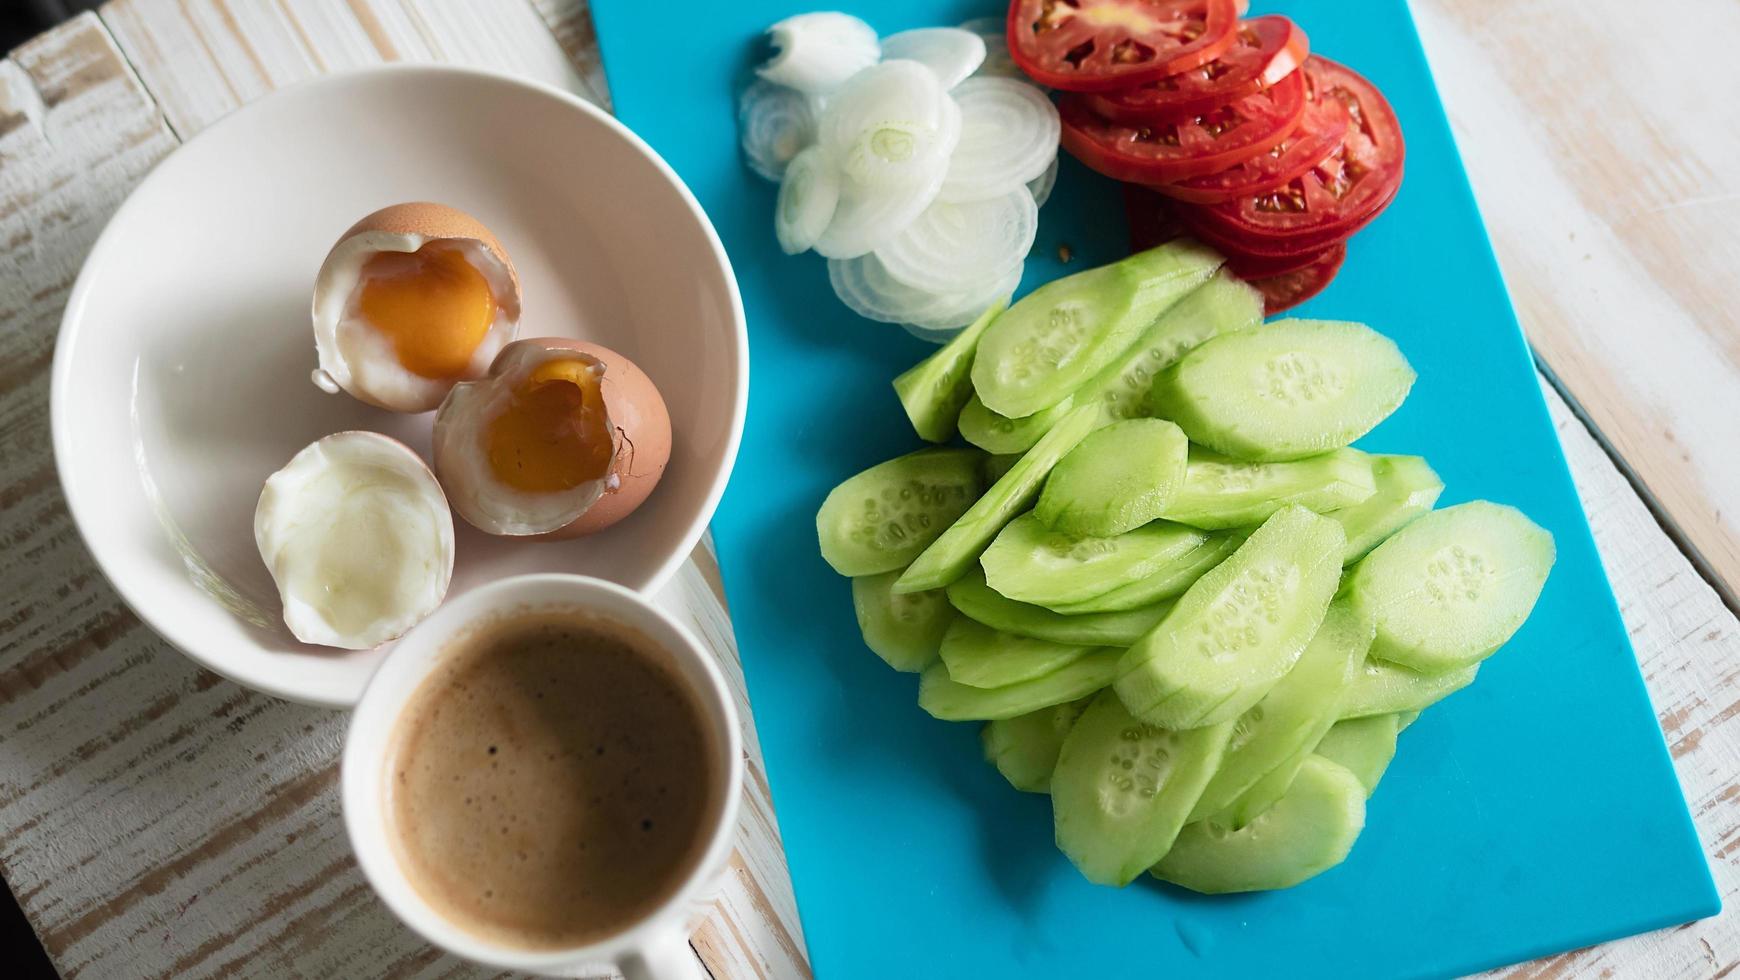 ovos cozidos com salada de pepino fresco e café da manhã xícara de café - conceito de comida de café da manhã vista superior foto